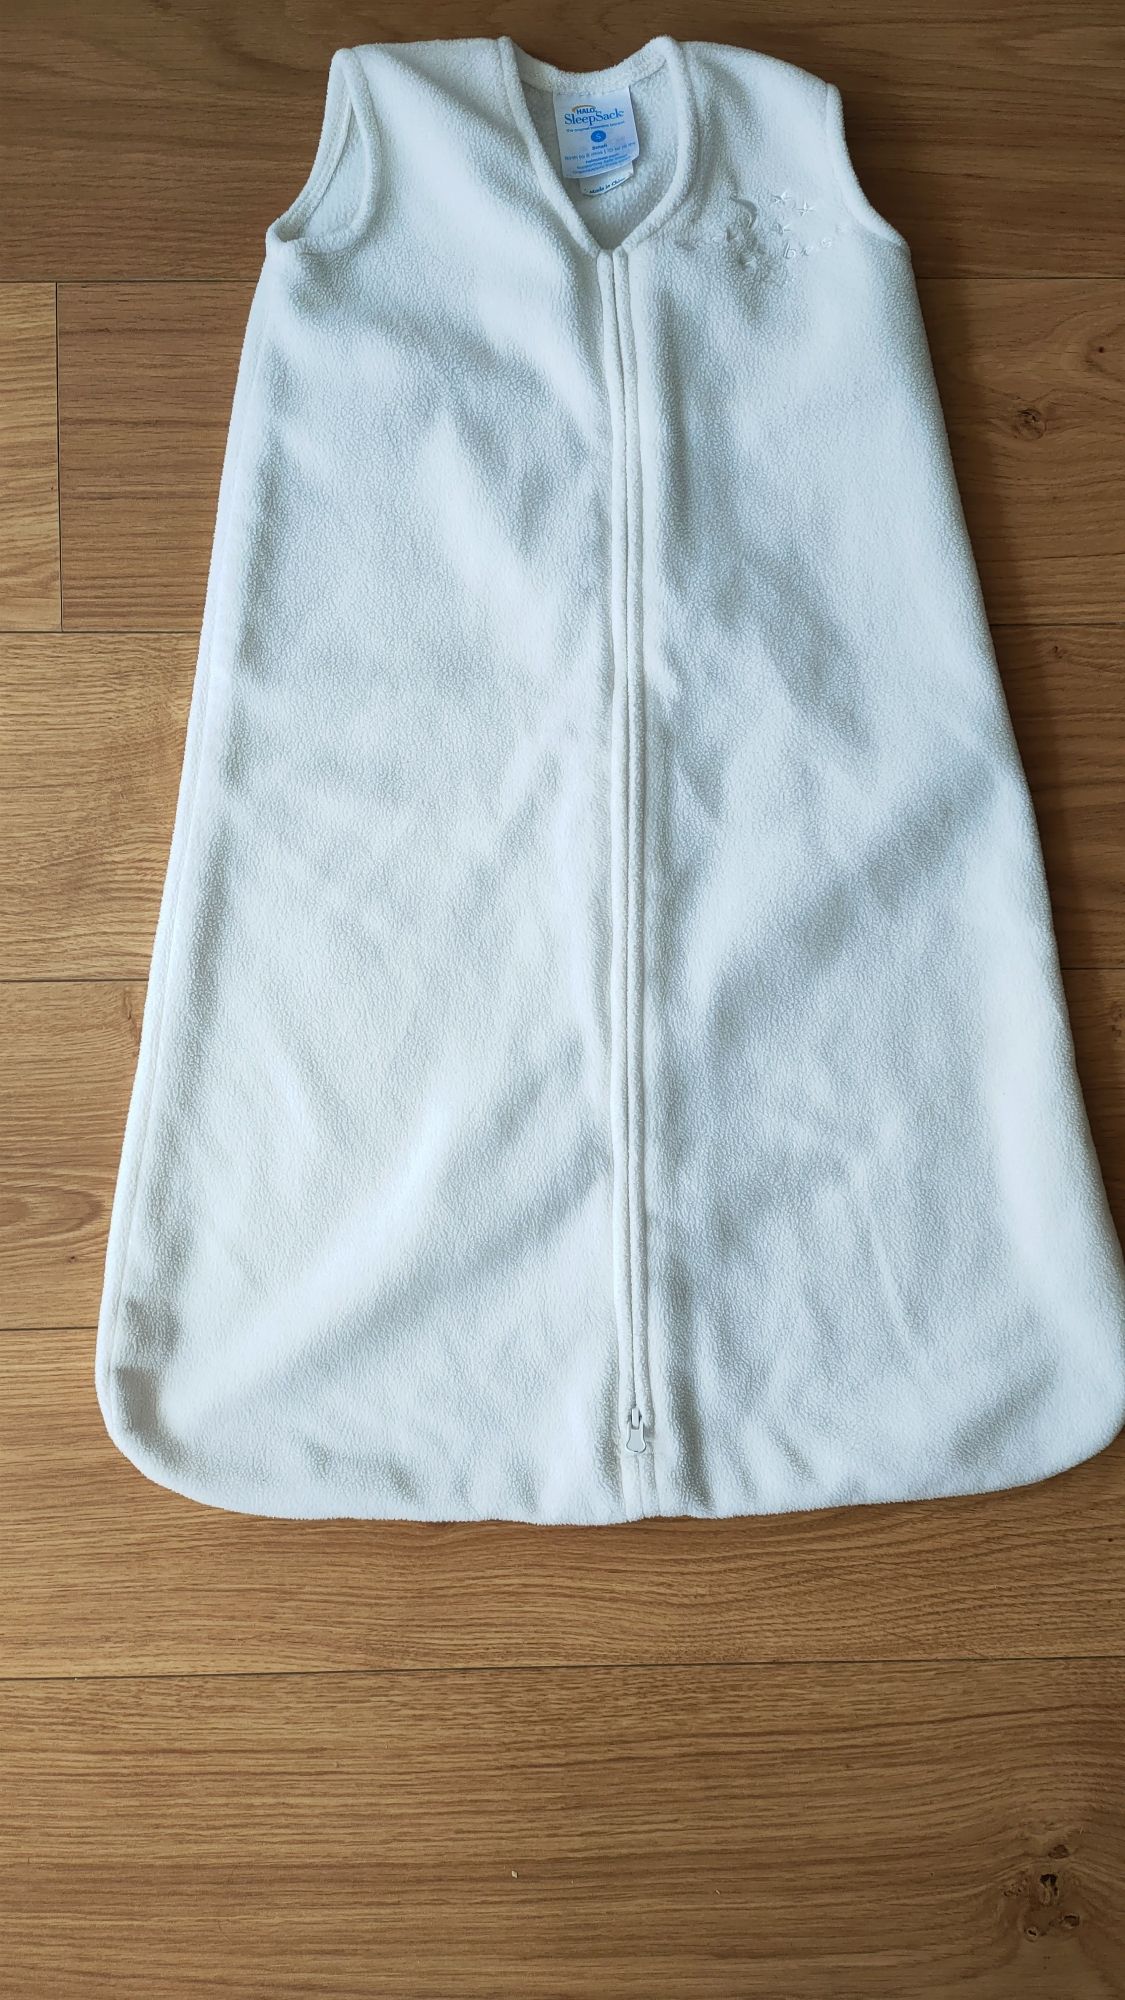 Śpiworek firmy Halo SleepSack, polarowy rozmiar S 6 miesięcy